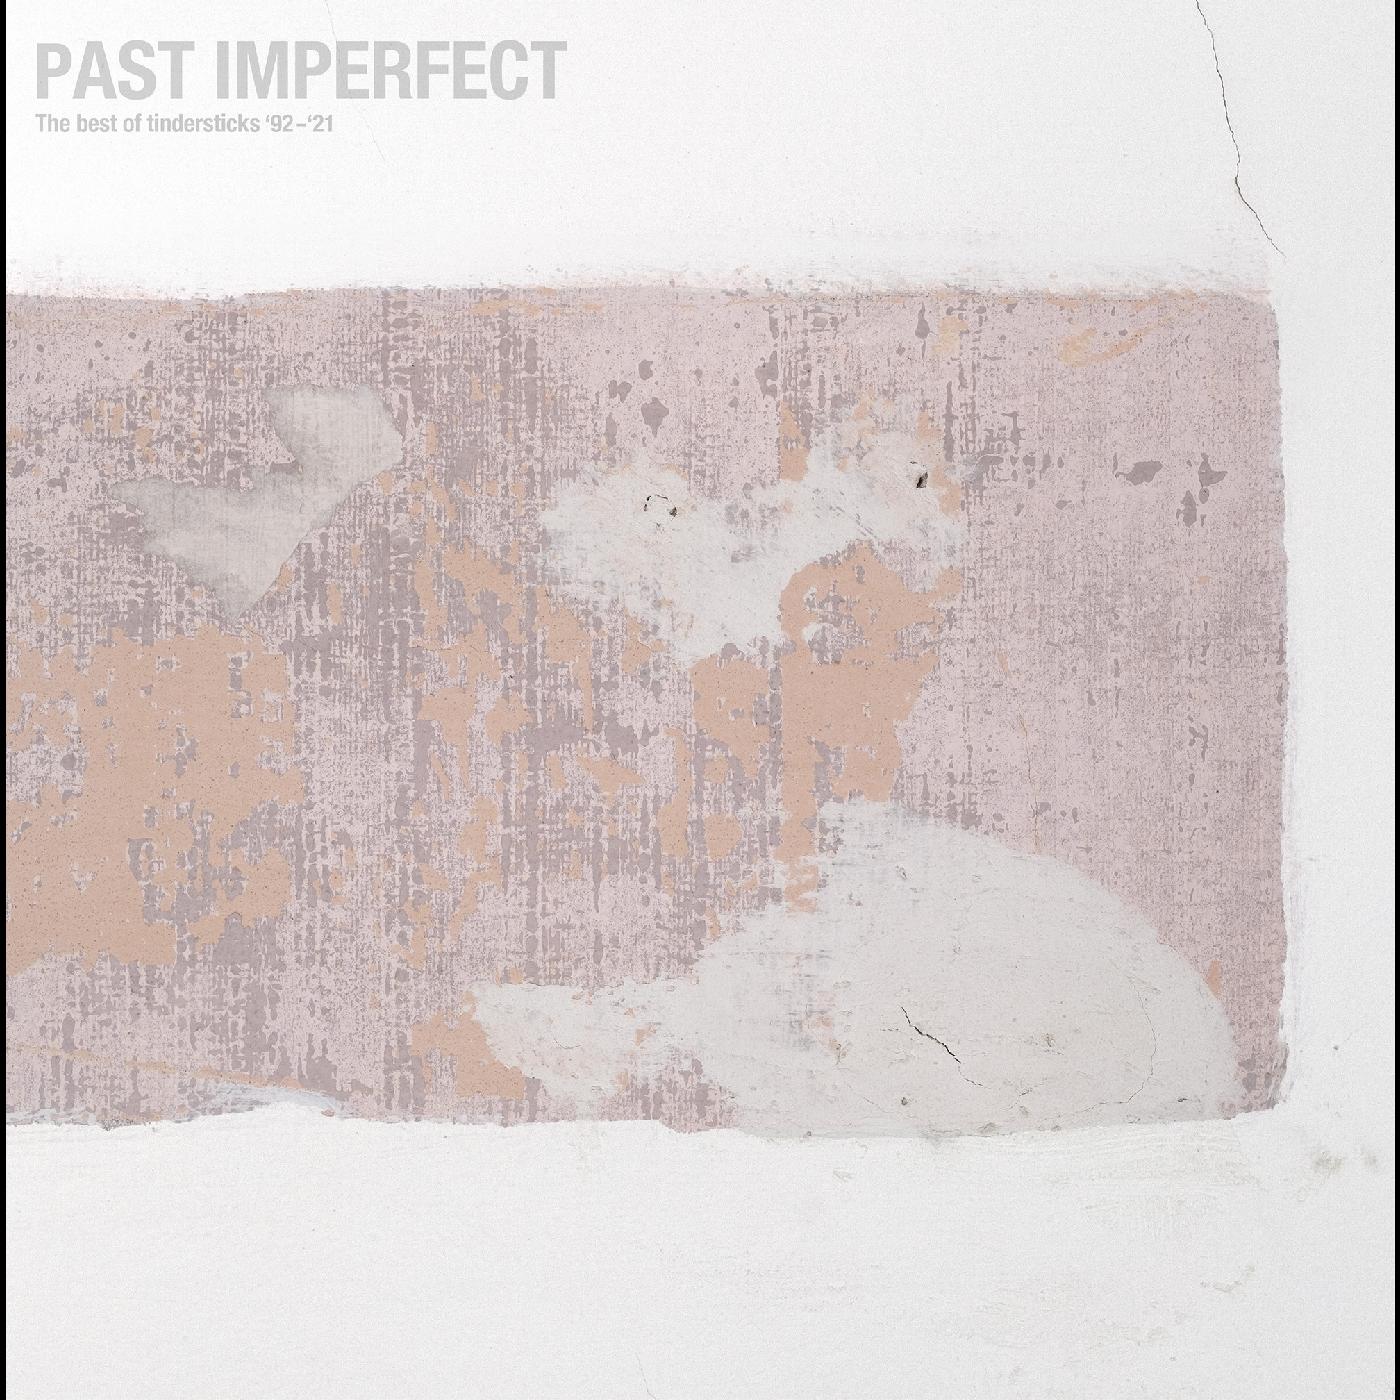 Tindersticks | PAST IMPERFECT the best of tindersticks ‚Äô92 - ‚Äô21 | Vinyl